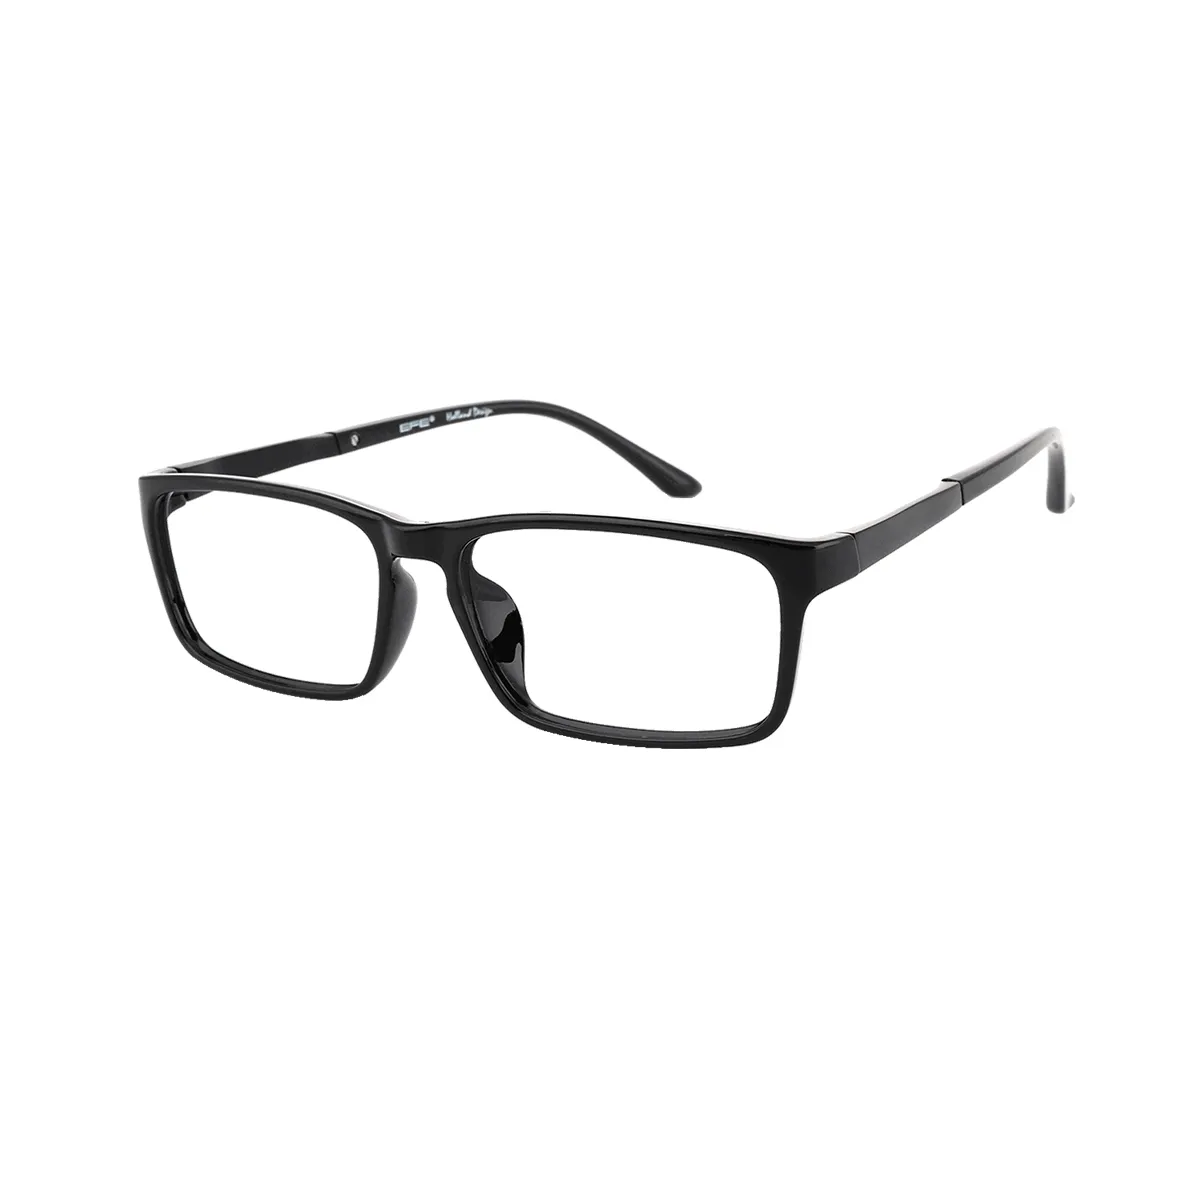 Steiner - Rectangle Black Glasses for Men & Women